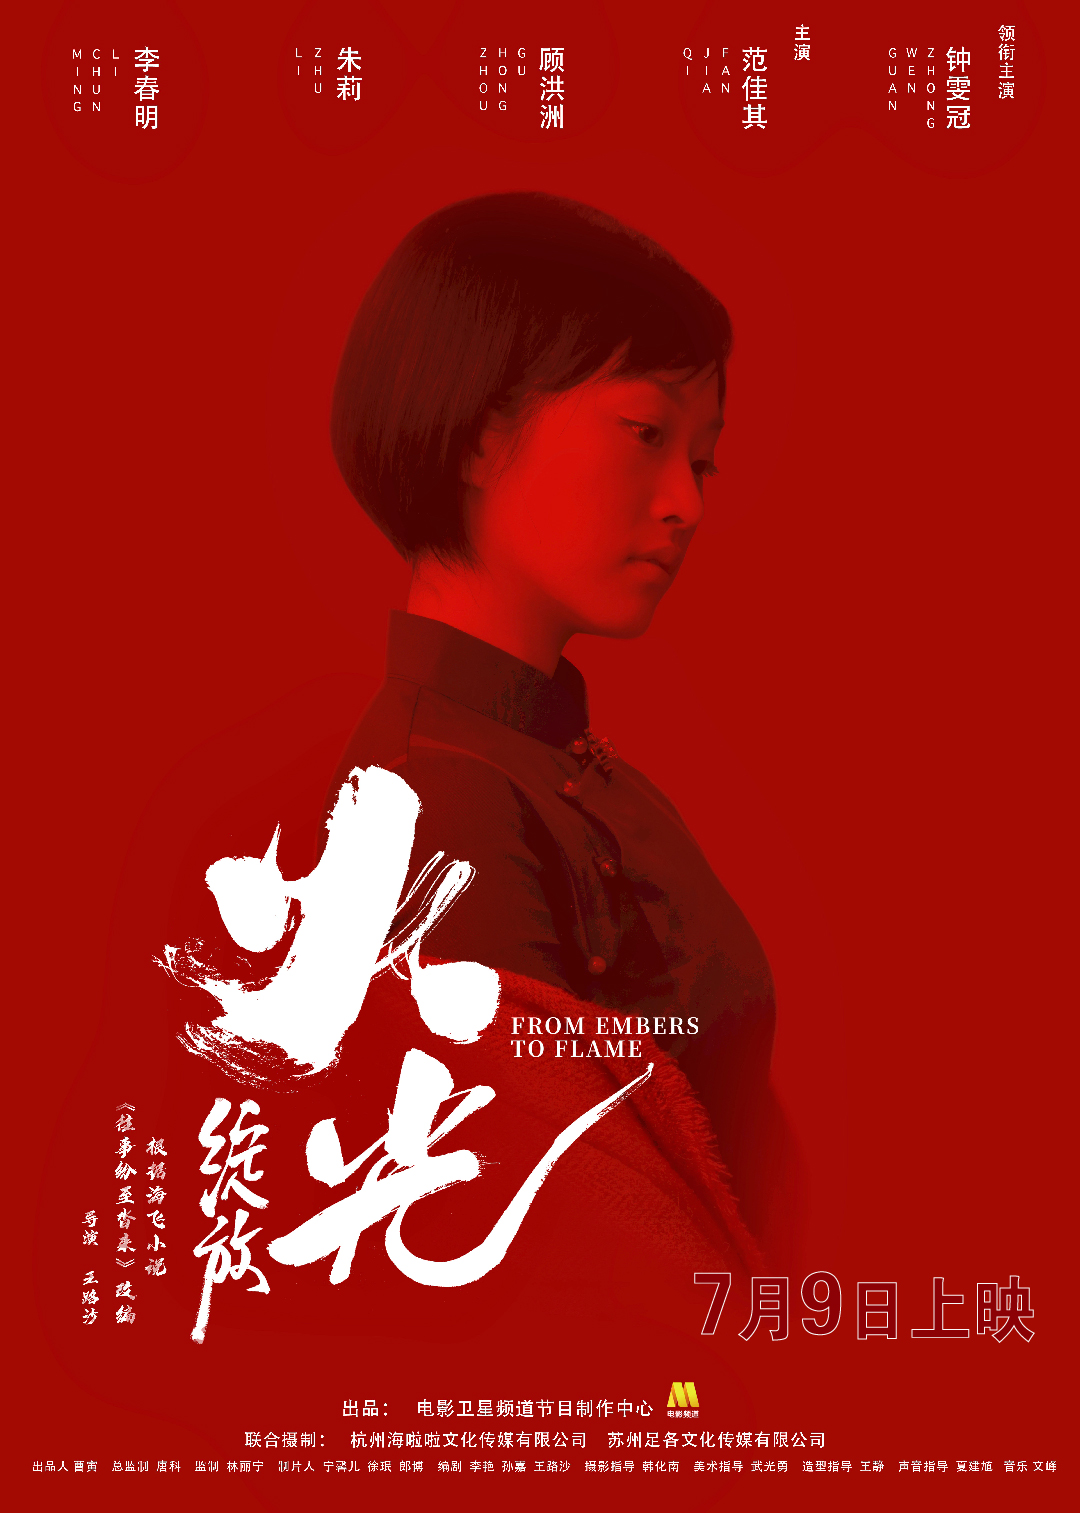 钟雯冠领衔主演电影《火光·绽放》《火光·重生》发布海报定档7月9日